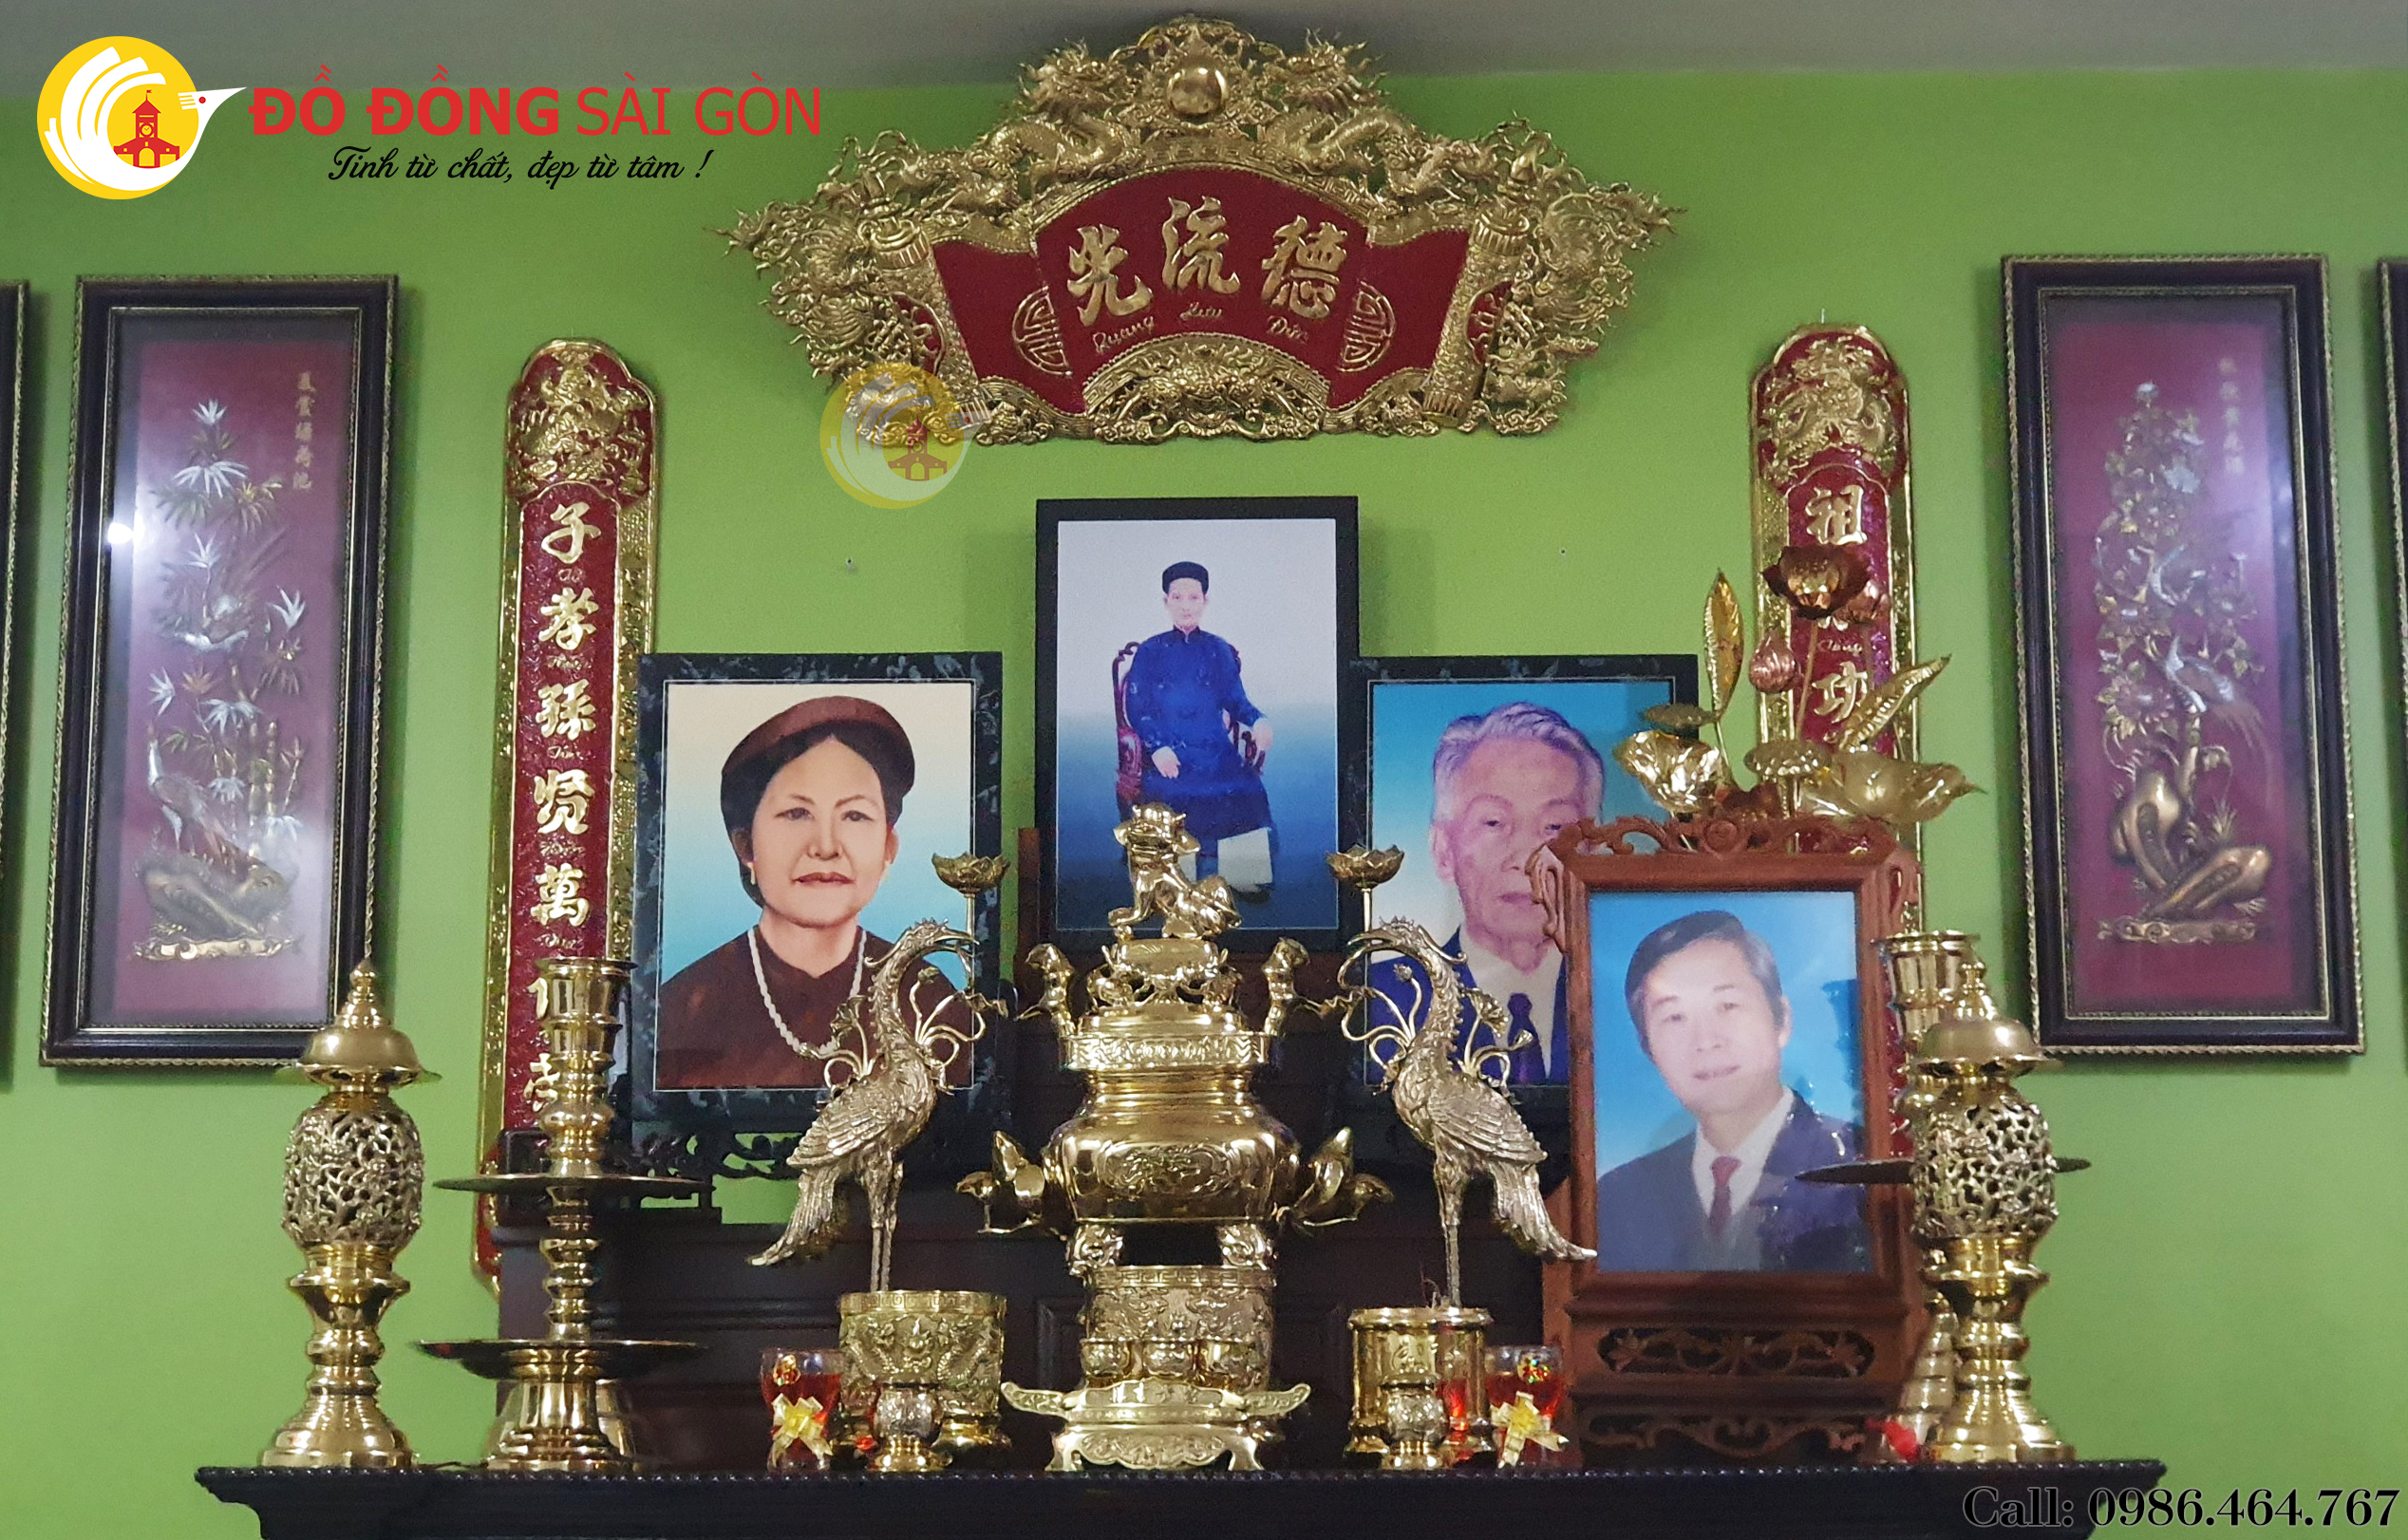 Nội thất phòng thờ gia tiên Hồ Chí Minh - Mới đây, Phú Nguyễn đã hoàn thành thành công nhiều mẫu phòng thờ (tổ đình) có nội thất cao cấp. Tham khảo hình ảnh để tìm kiếm sự cảm hứng, để tạo ra không gian nơi cầu nguyện đẹp nhất cho gia đình bạn.